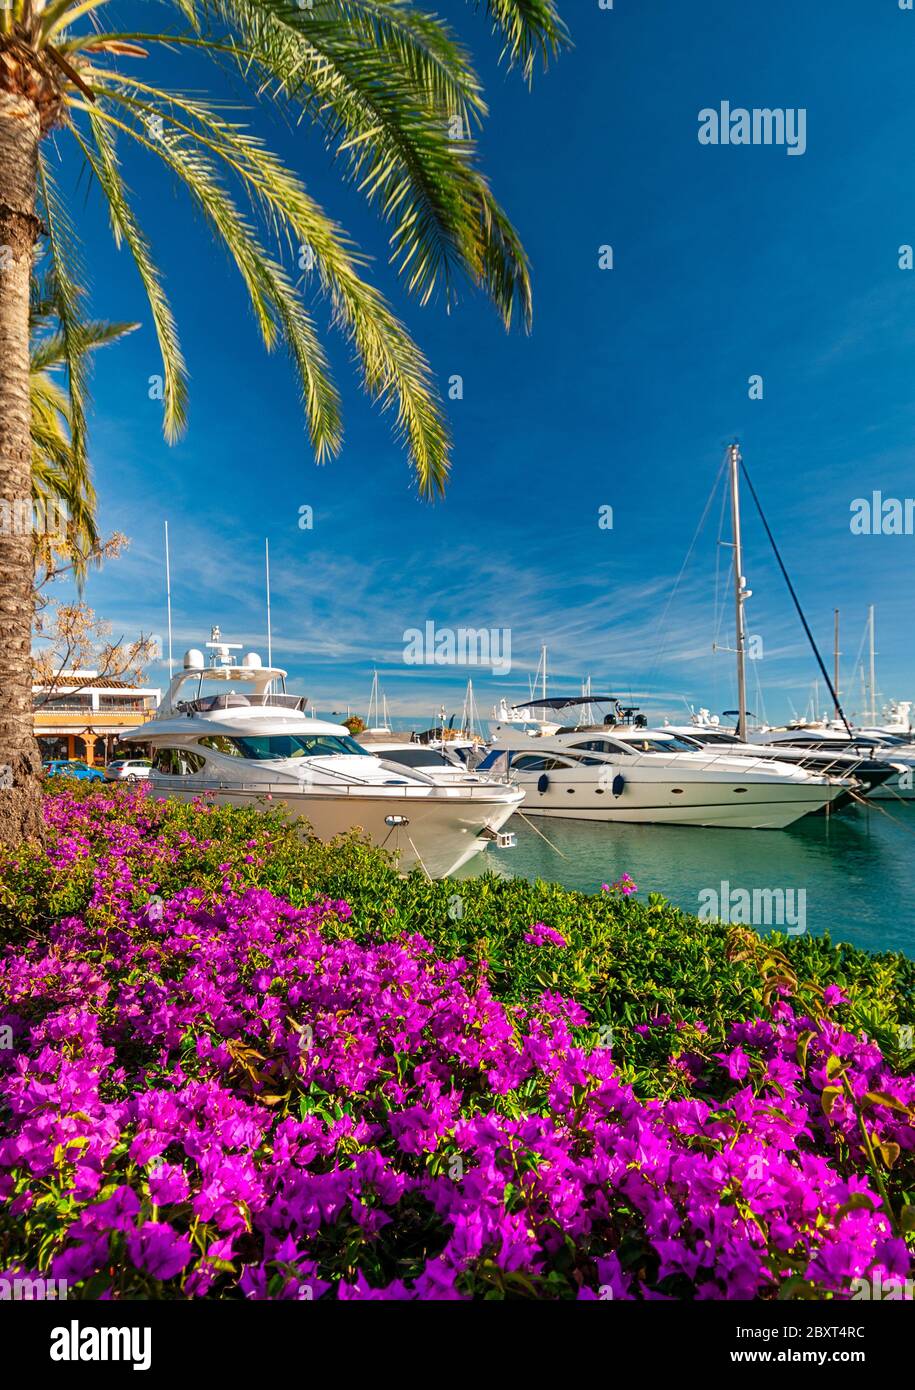 Puerto Portals Mallorca marina ciel bleu palmiers bougainvilliers et yachts à moteur amarrés portails nous Palma de Majorque Iles Baléares Espagne Banque D'Images